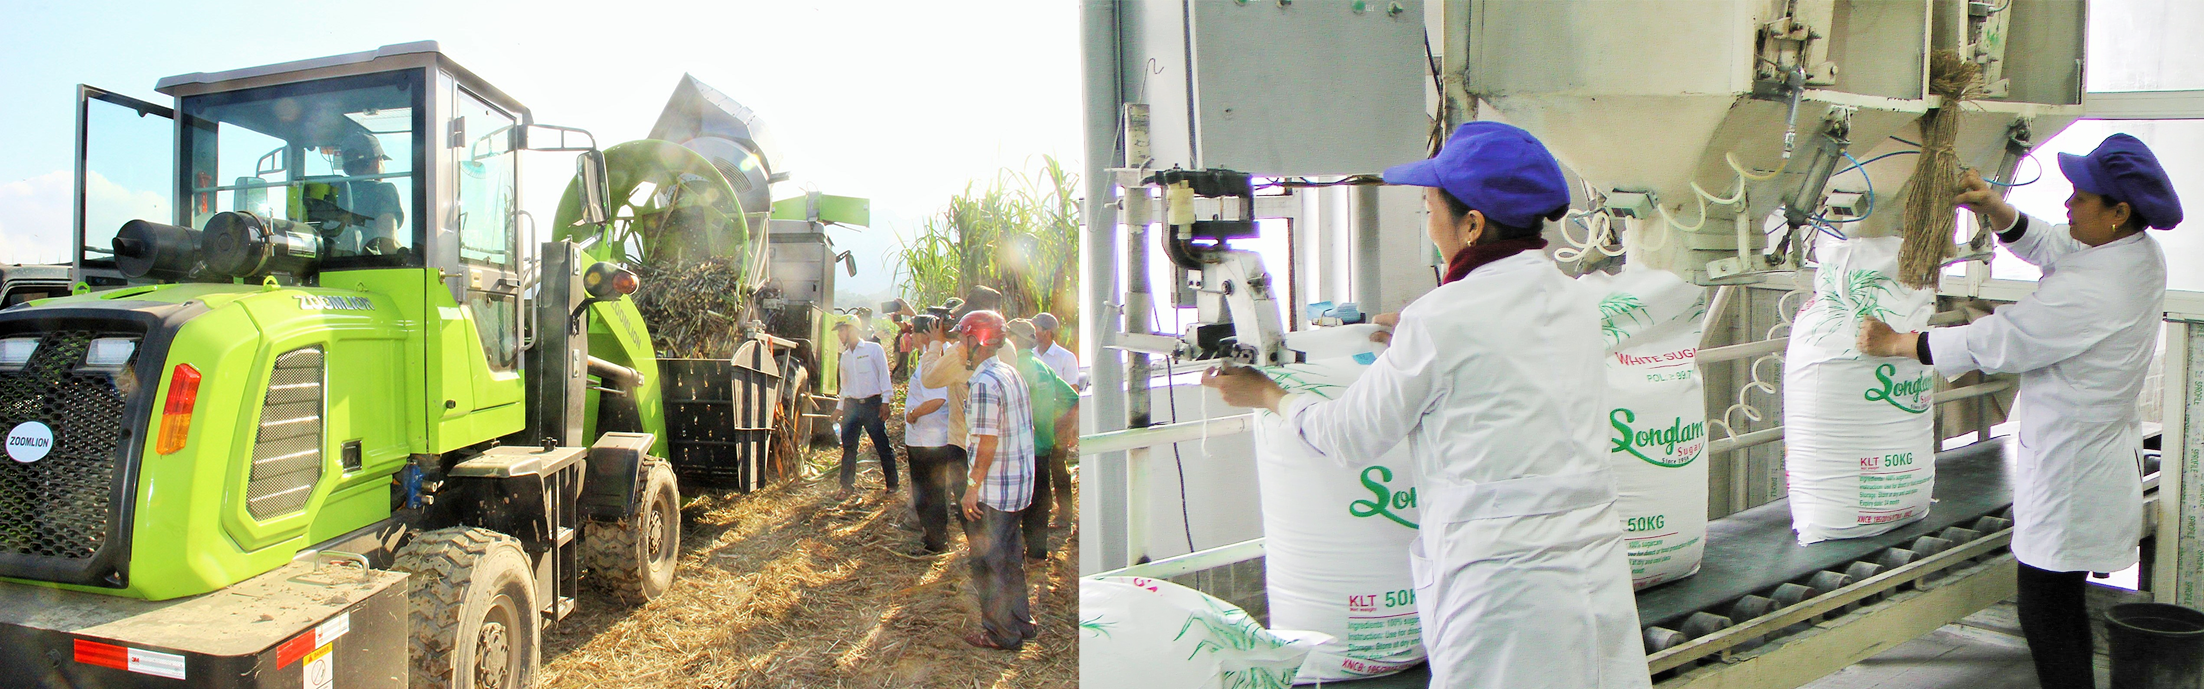 Công ty CP Mía đường Sông Lam áp dụng cơ giới hóa vào thu hoạch mía; Dây chuyền sản xuất đường kính trắng tại công ty.